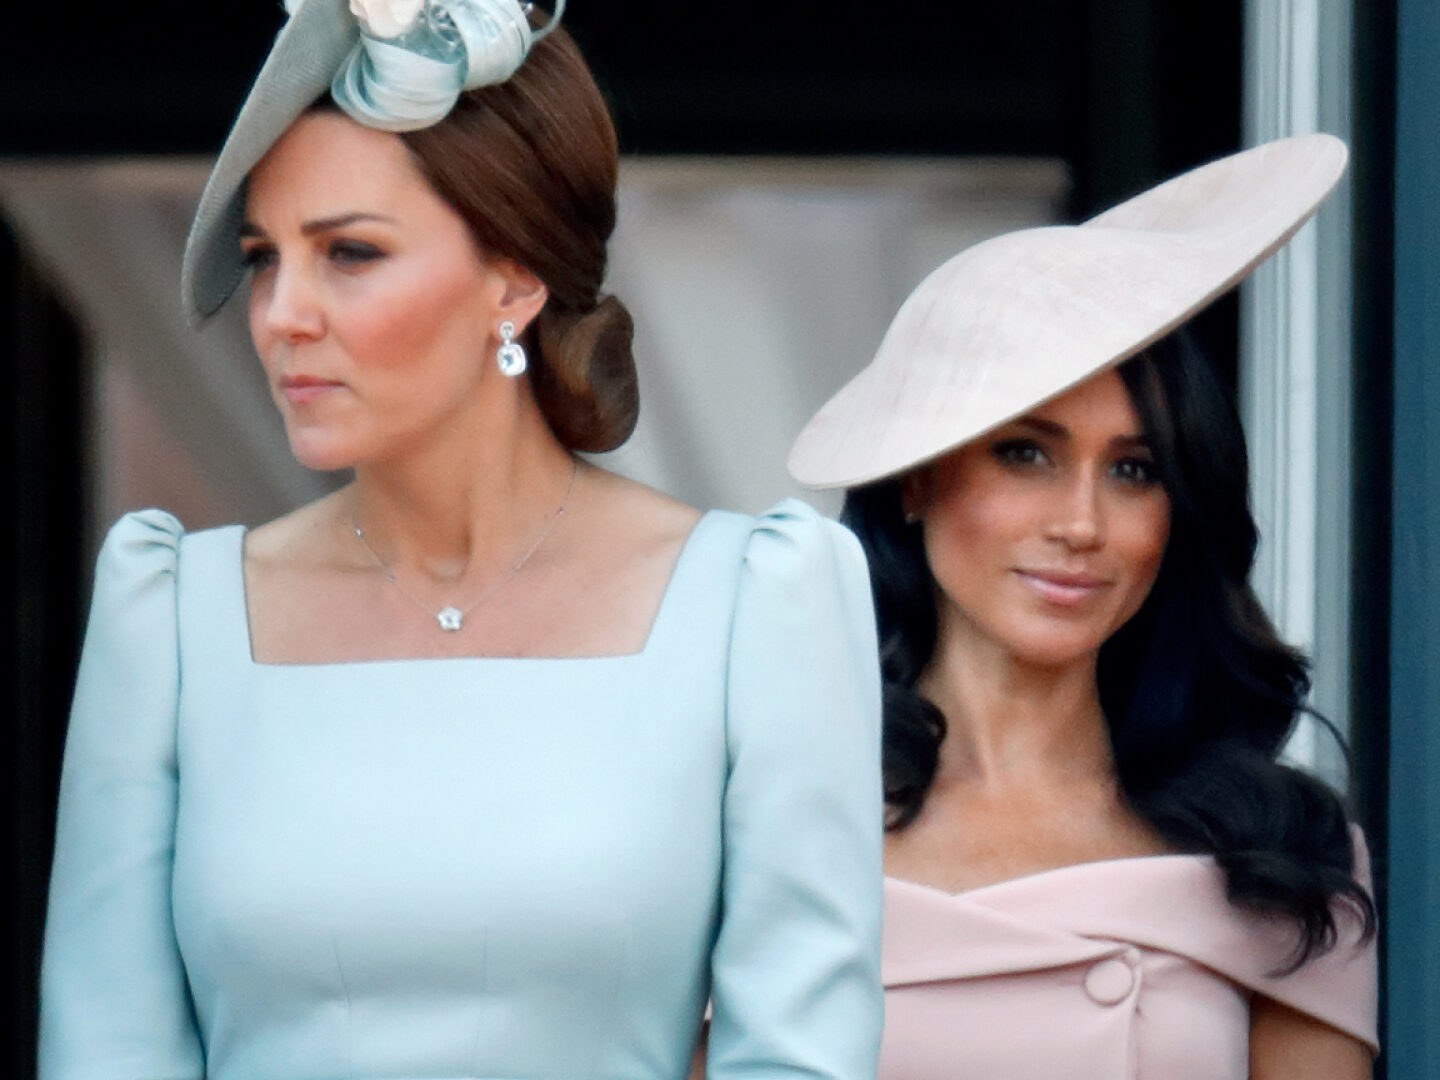  Kate la Duchesse de Cambridge, et Meghan la Duchesse de Sussex au balcon de Buckingham Palace en juin 2018 (Photo by Max Mumby/Indigo/Getty Images)